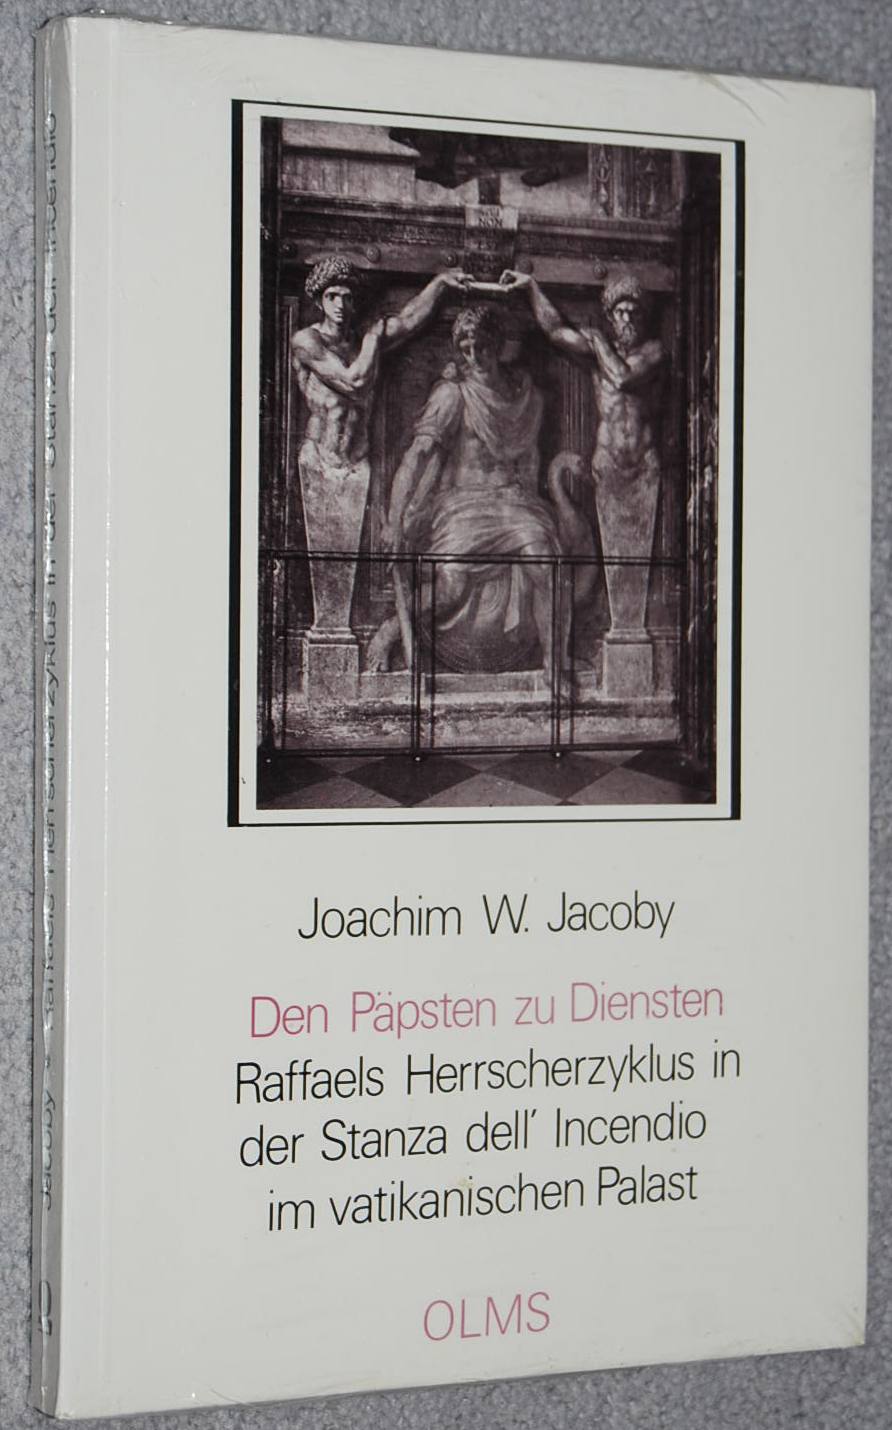 Den Päpsten zu Diensten : Raffaels Herrscherzyklus in der Stanza dell'Incendio im vatikanischen Palast (Studien zur Kunstgeschichte ; Bd. 22) - Joachim W. Jacoby